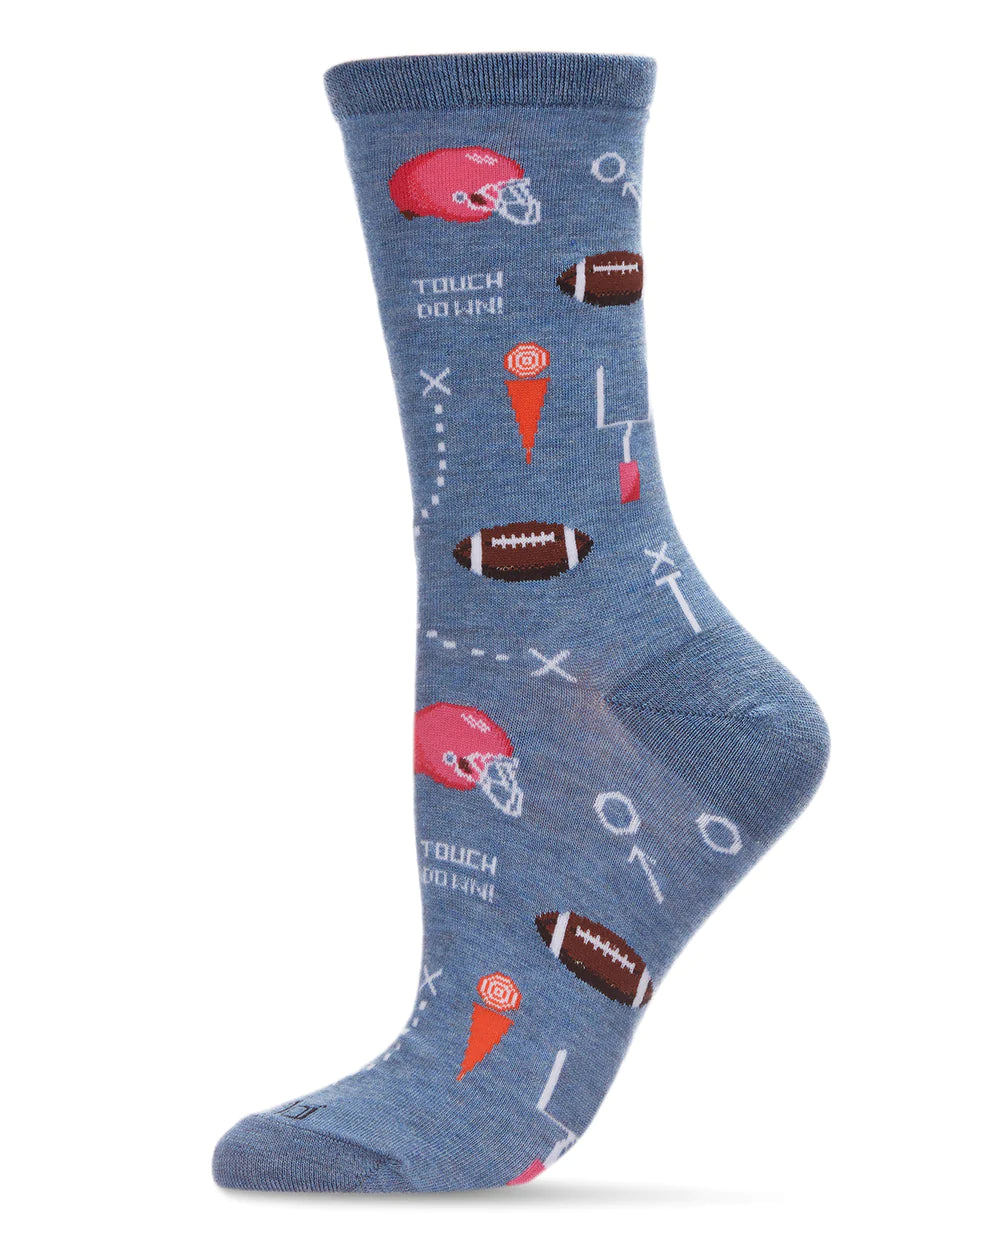 Woman's Socks